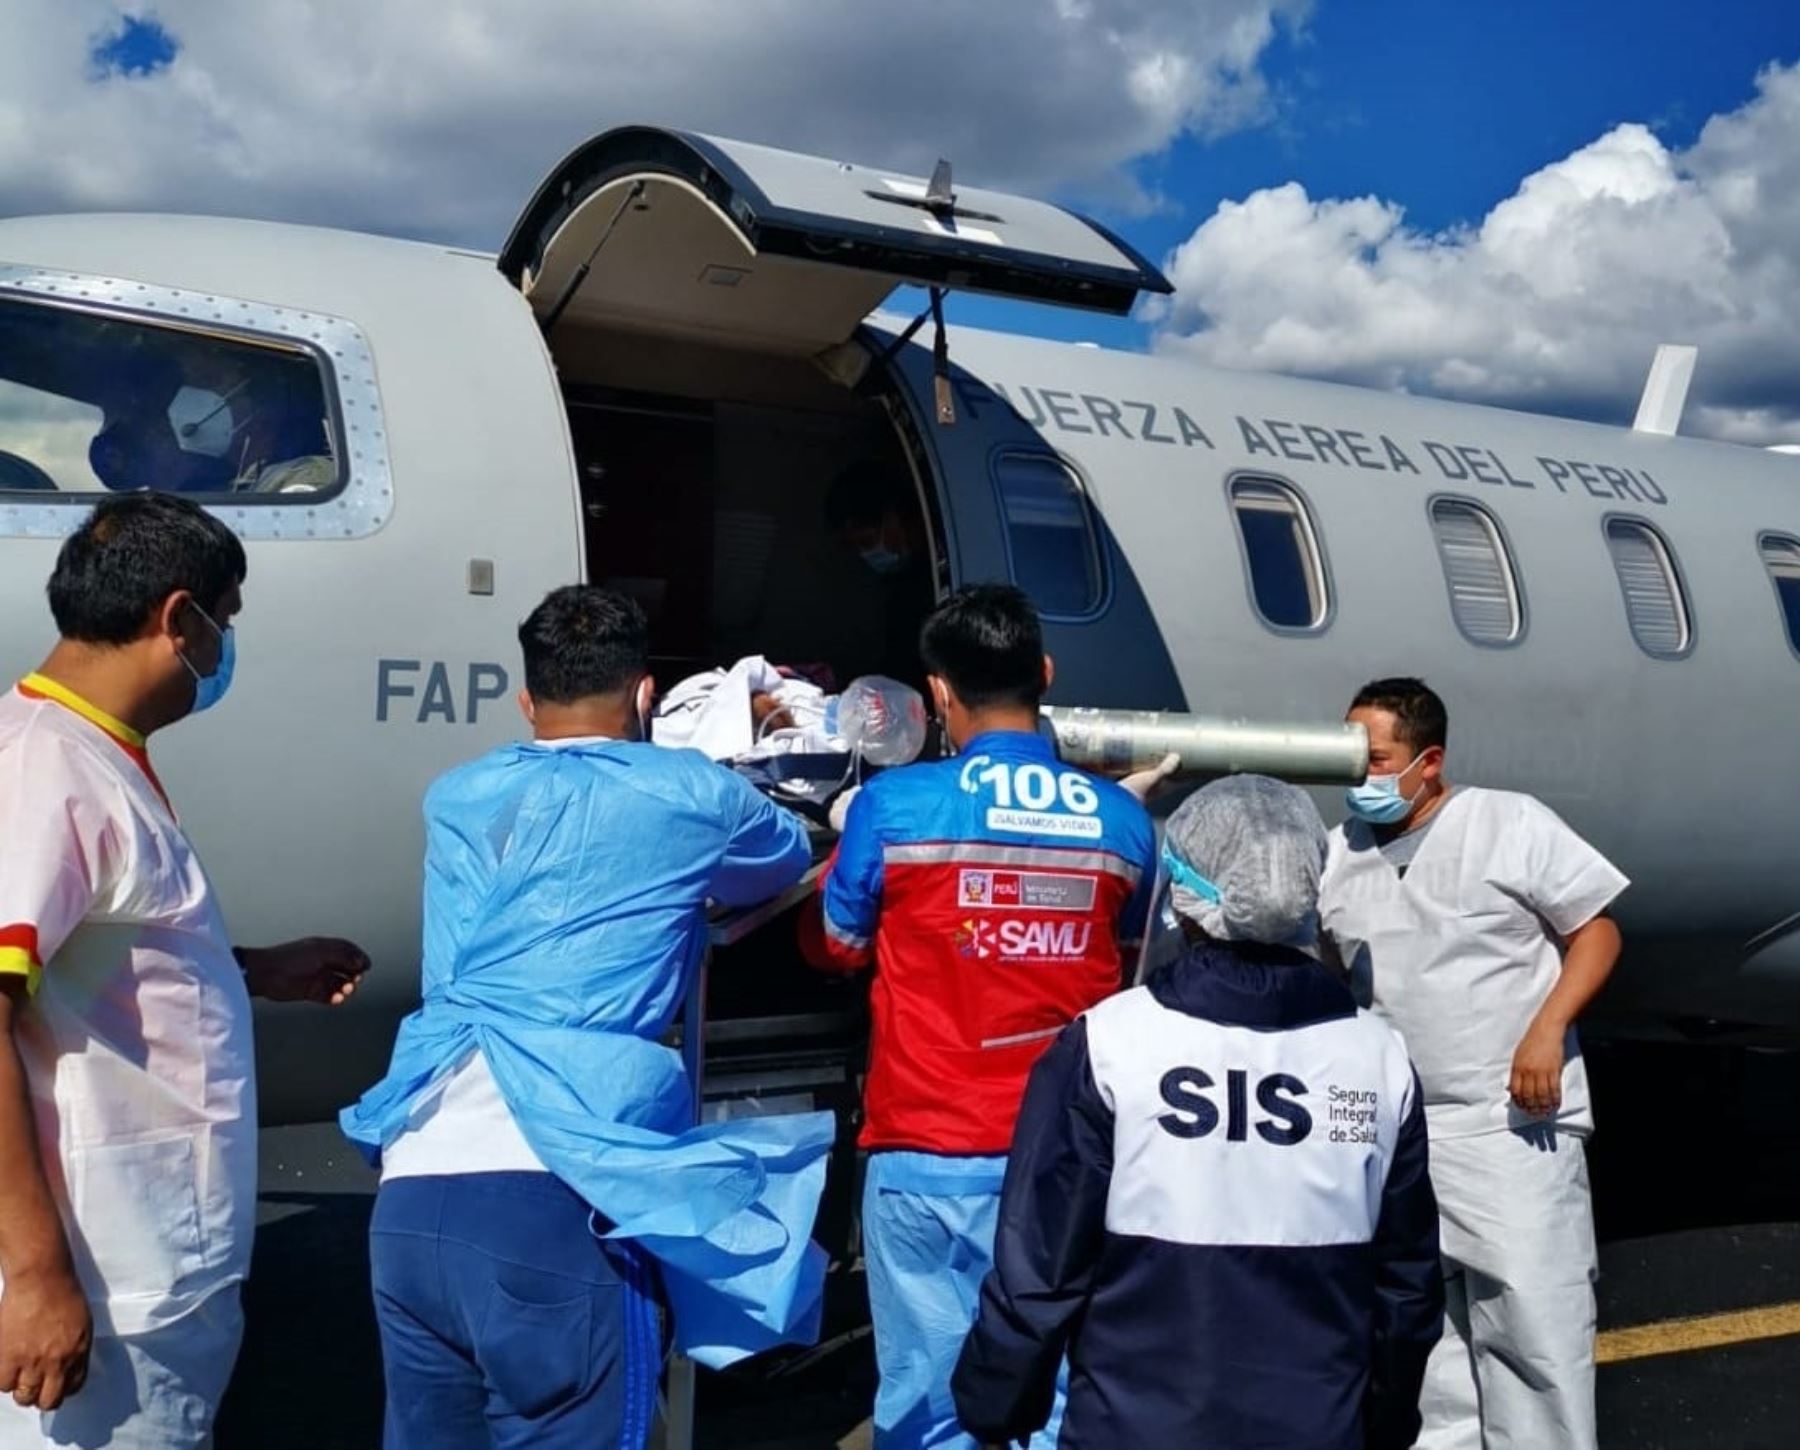 Más de 1,400 asegurados salvaron la vida gracias a traslados aéreos de emergencia durante la pandemia de covid-19, informó el SIS.